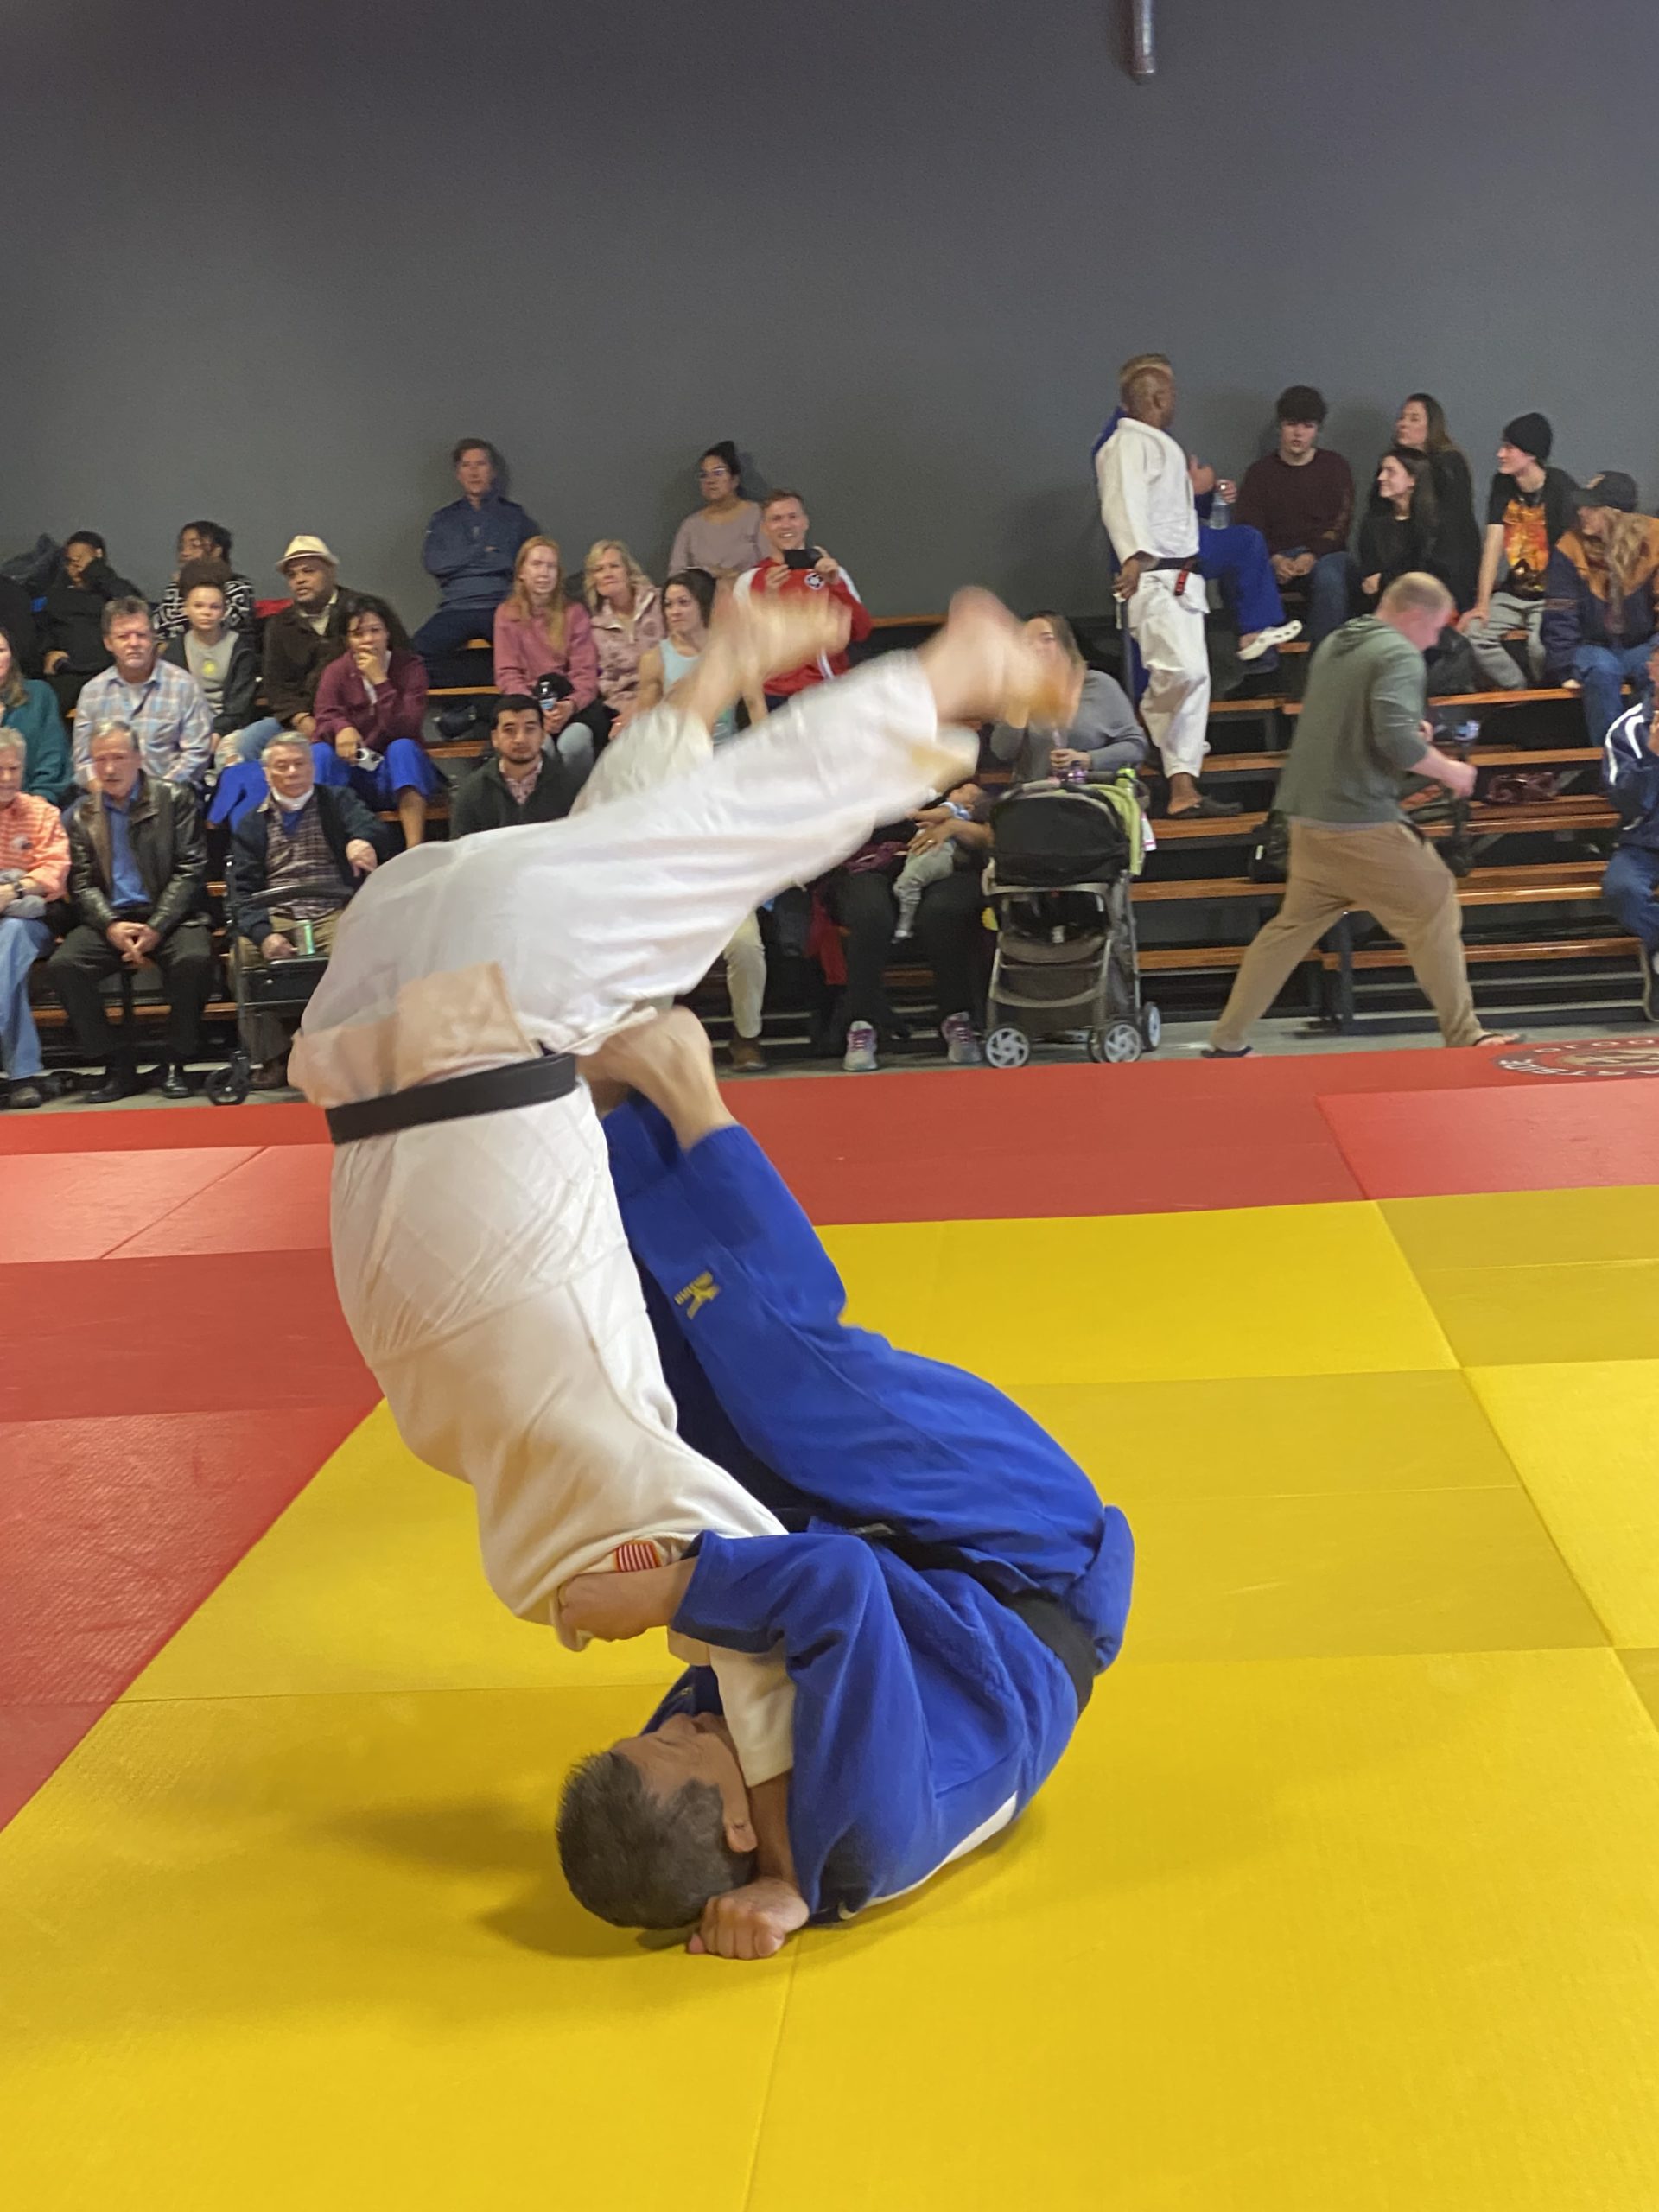 Gallery Veterans Judo USA